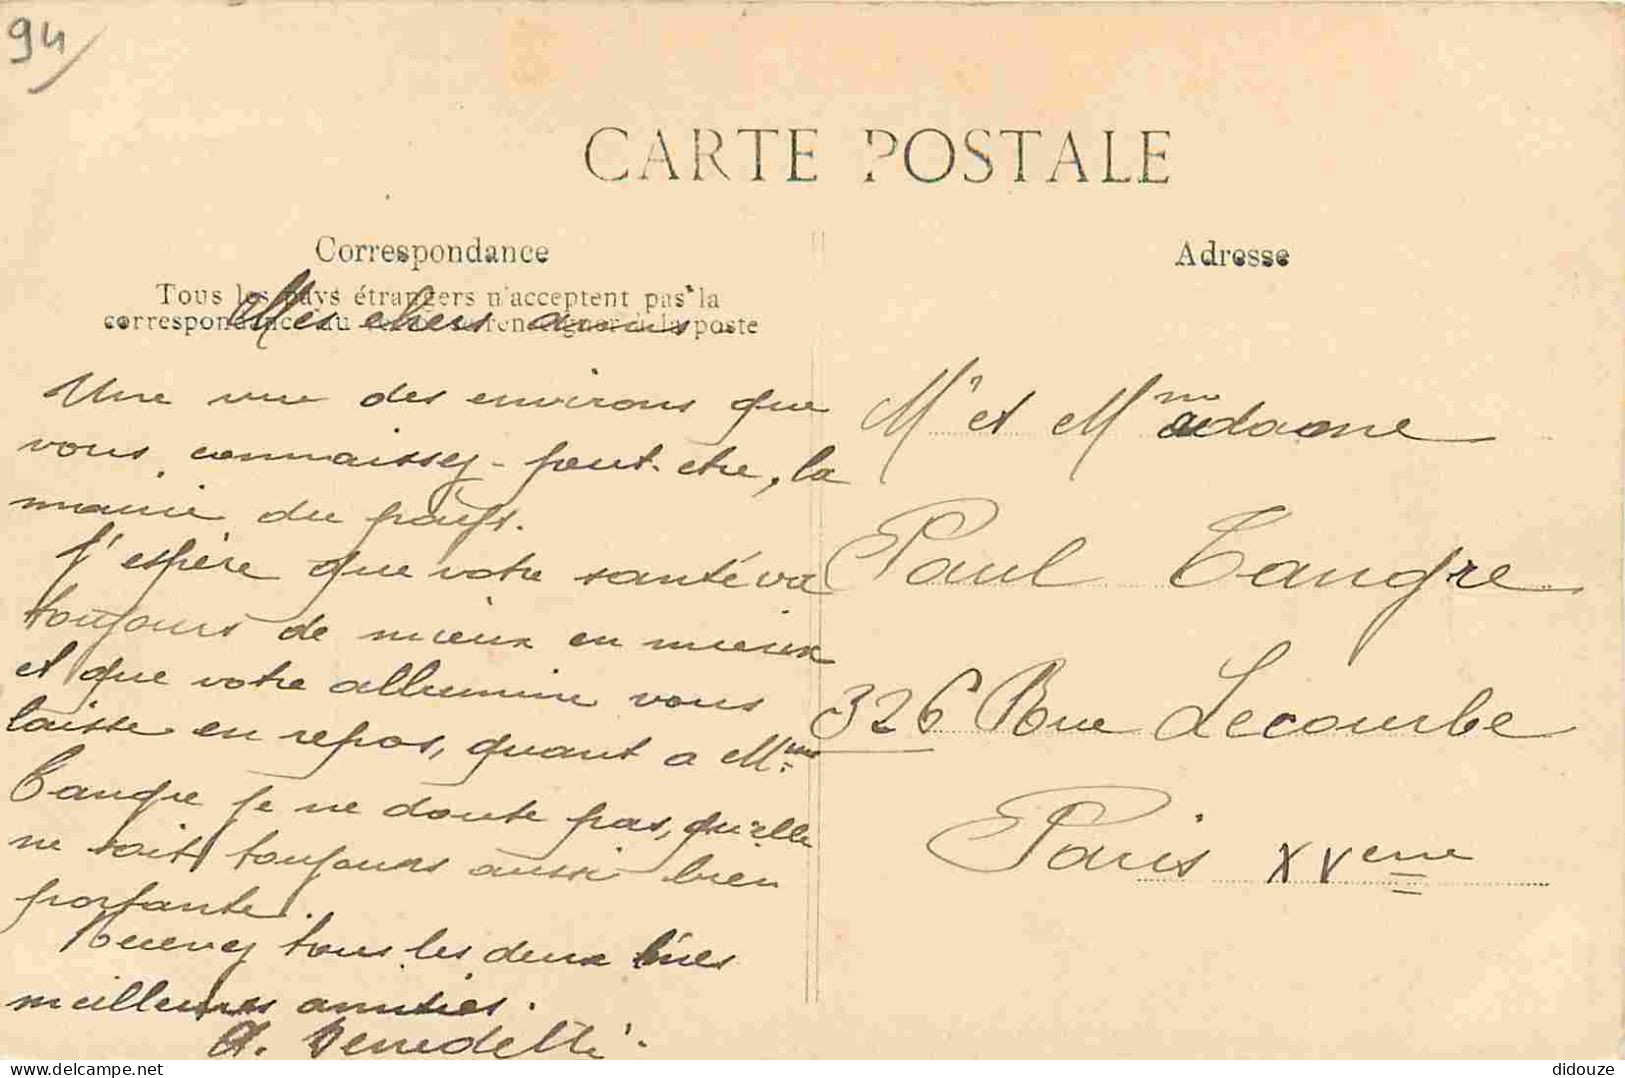 94 - Limeil Brevannes - La Mairie - Animée - Correspondance - CPA - Oblitération Ronde De 1911 - Voir Scans Recto-Verso - Limeil Brevannes